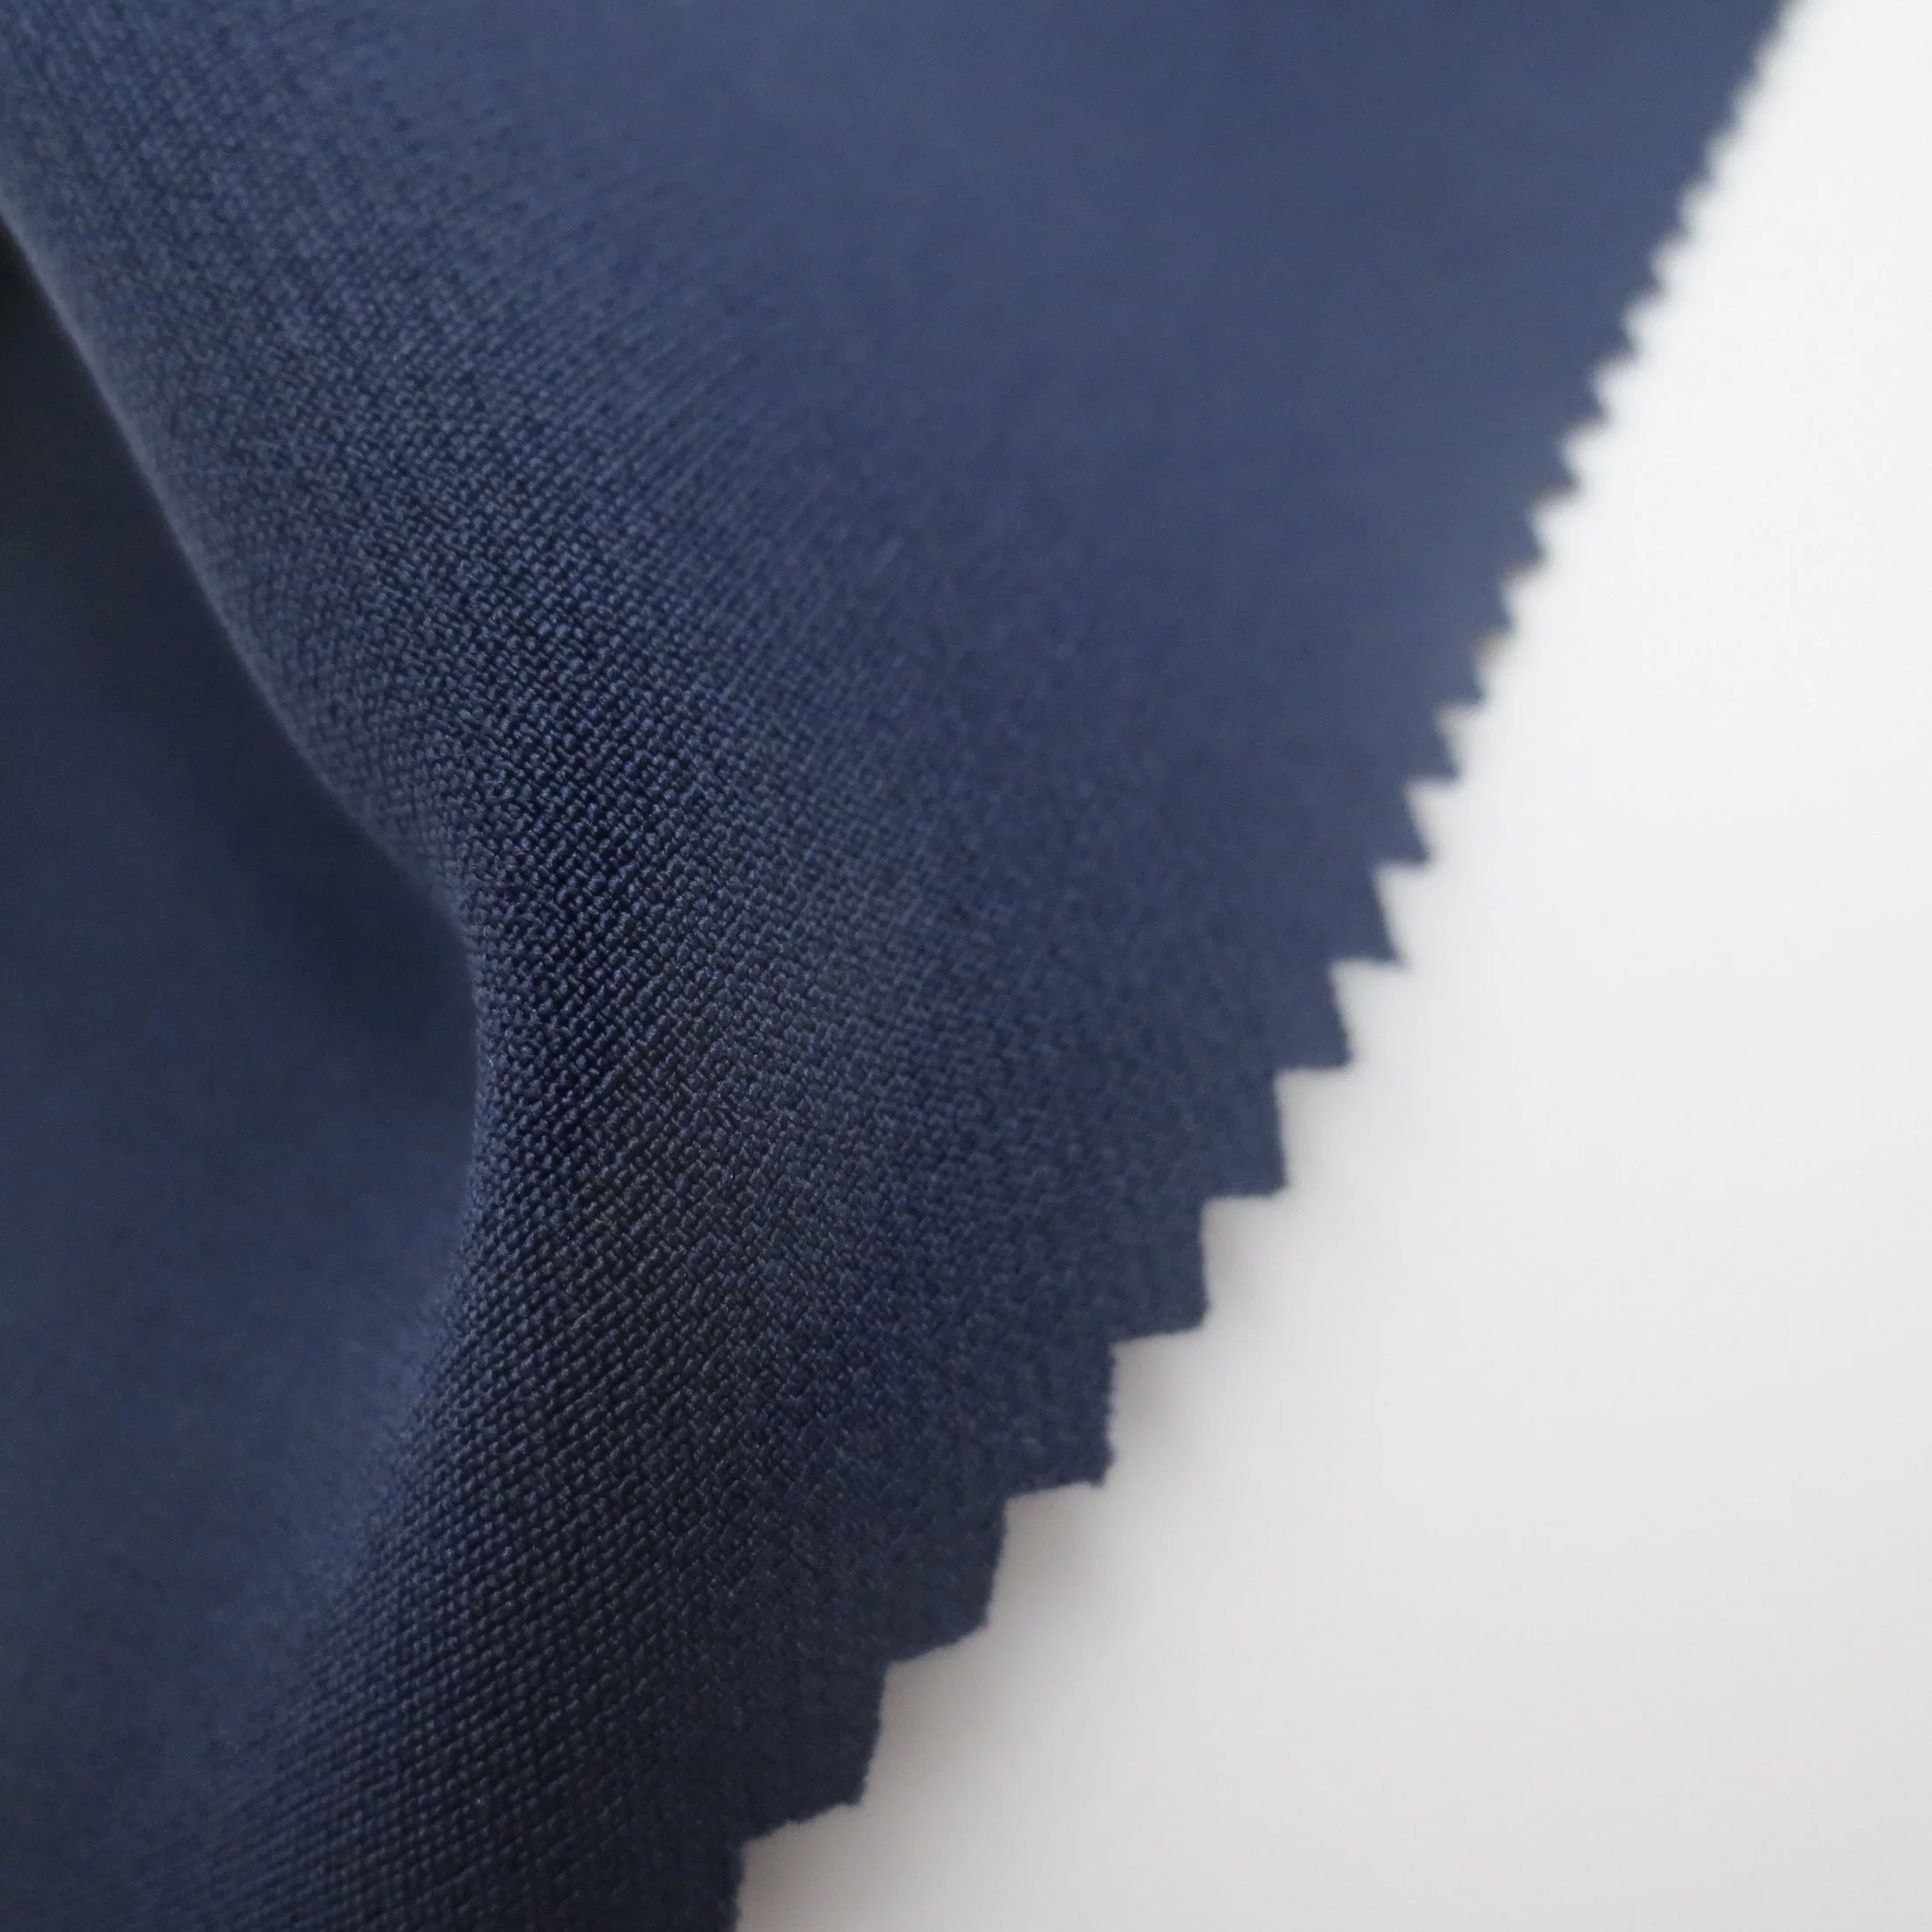 Tissu recyclé en jacquard imperméable extensible en polyester/nylon/spandex tissé pour manteau, veste et uniforme